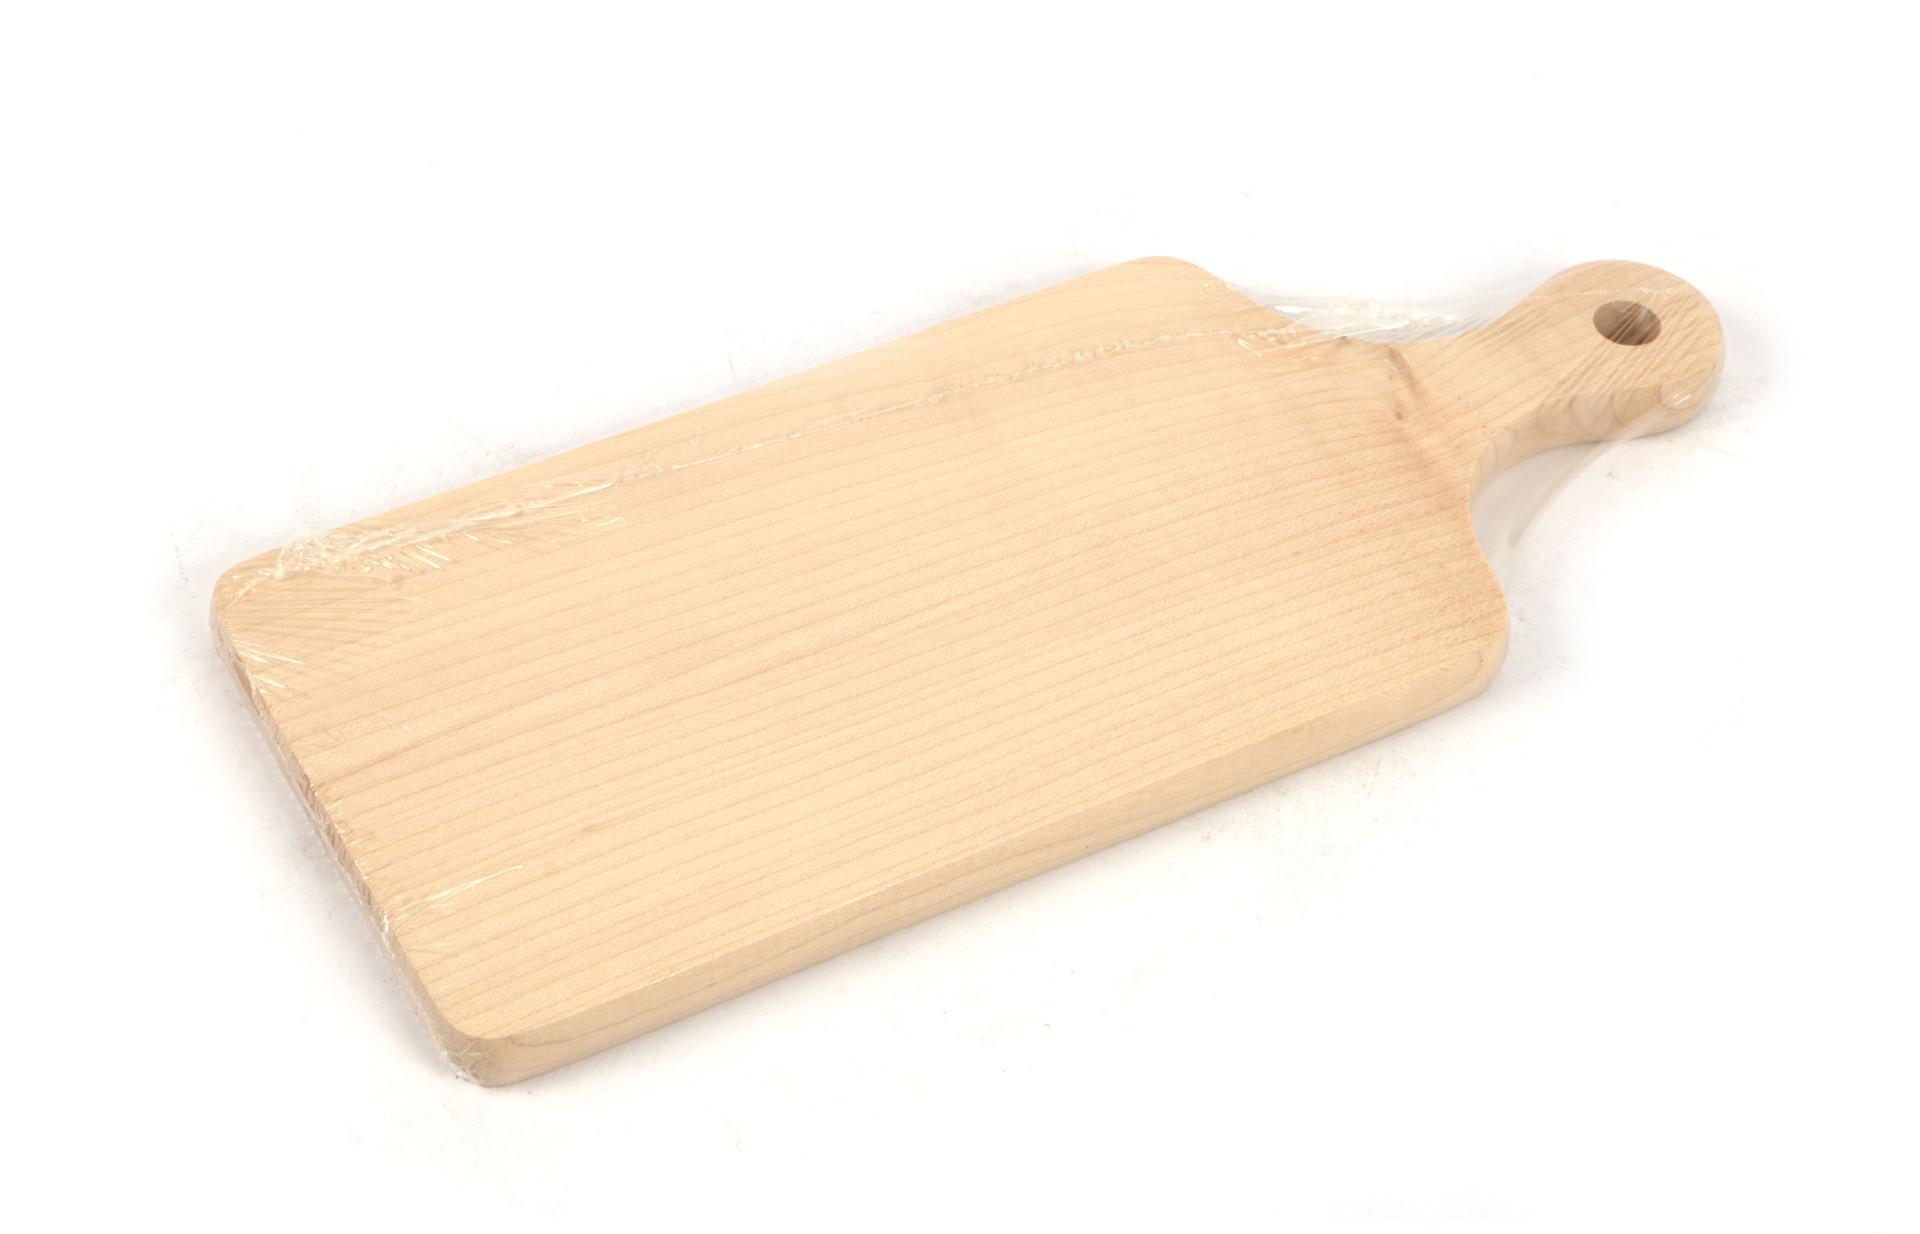 Tagliere in legno massello di cedro 42 x 32 cm